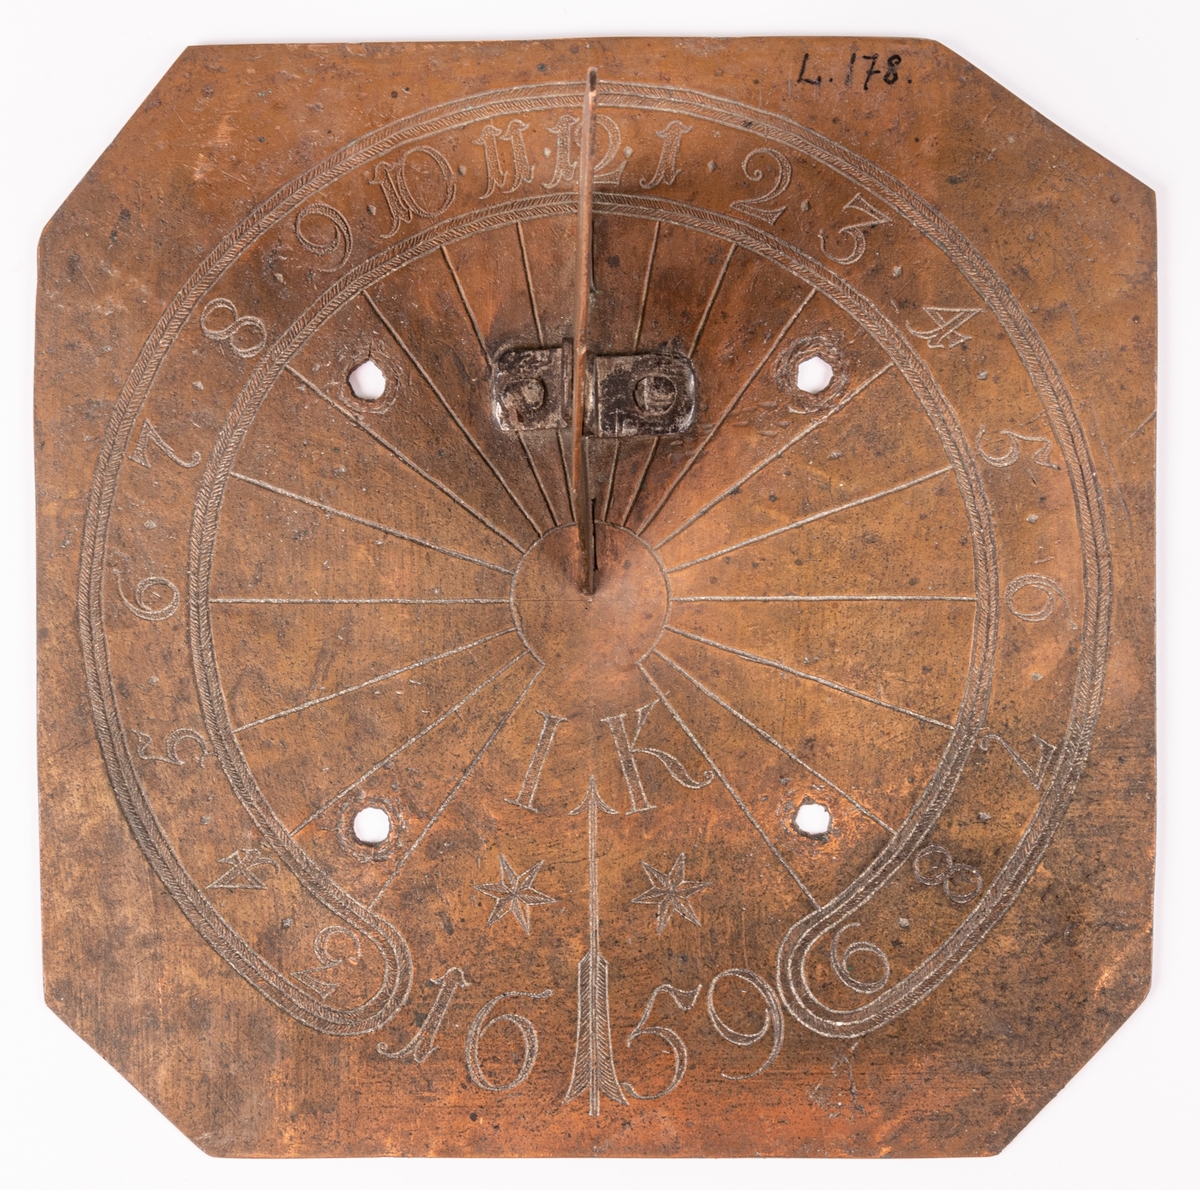 Solvisare av koppar, fyrsidig med triangulär stående visare. Fyra borrade hål för skruvar. Ristat cirklar med timsiffror och radiära linjer från centrum.  Märkt: "IK 1659".